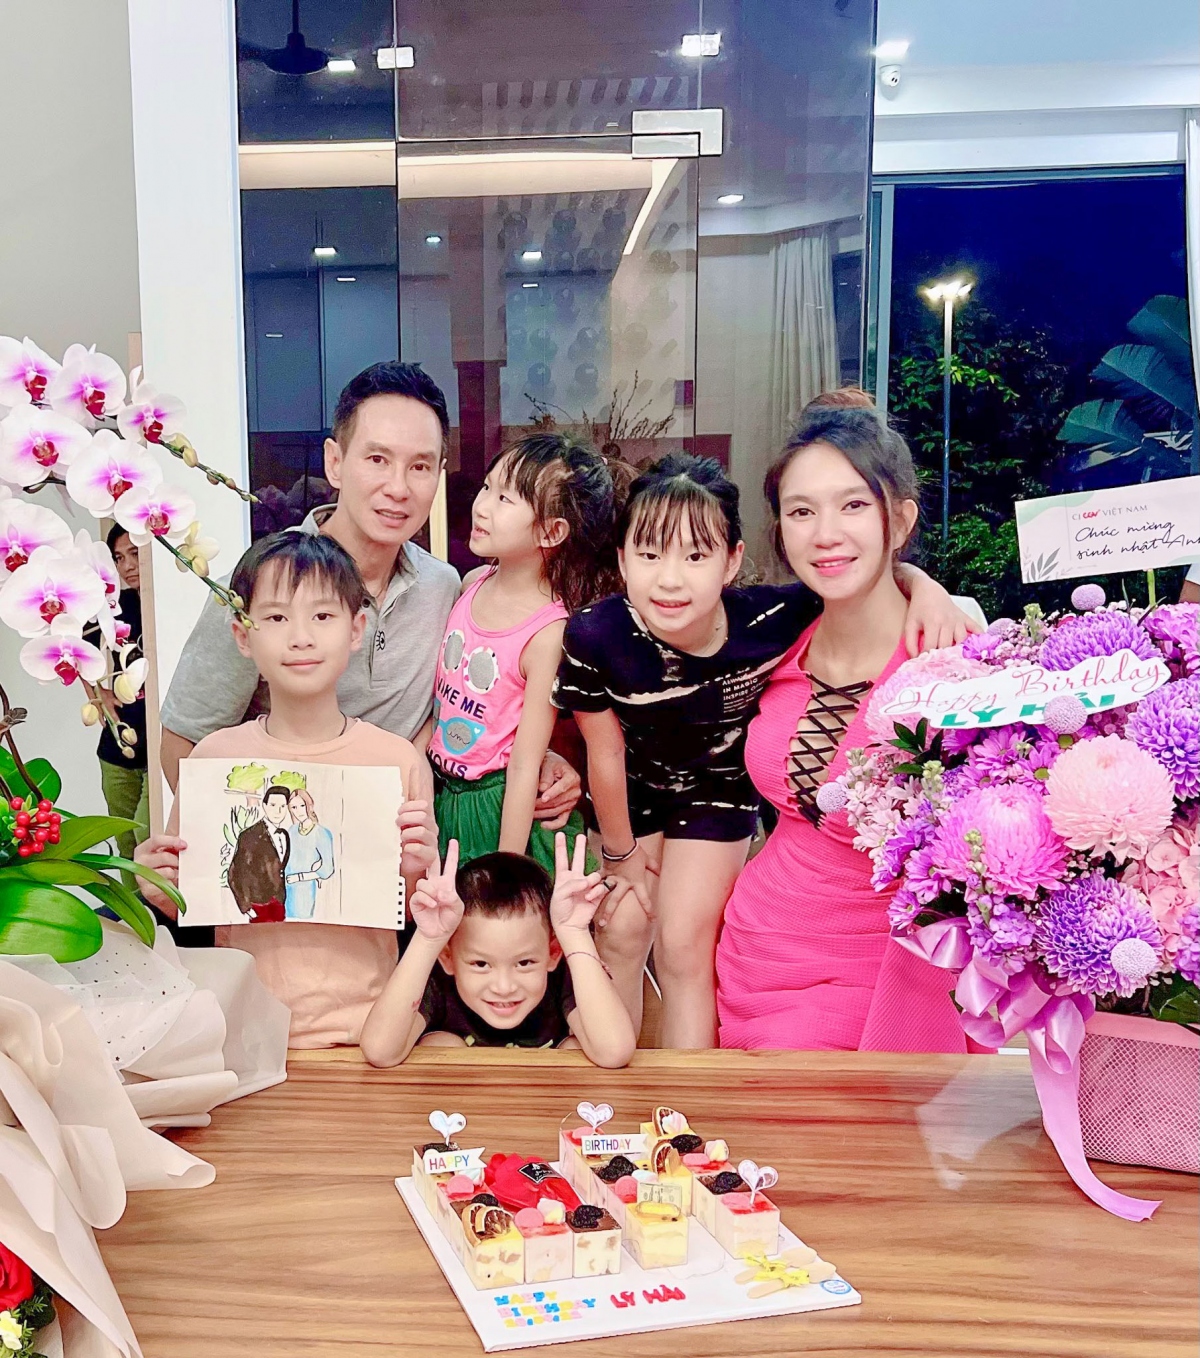 Đại gia đình Lý Hải diện đồ đôi mừng sinh nhật công chúa Sundy, nhan sắc của bố mẹ vợ khiến fan bất ngờ  - Ảnh 1